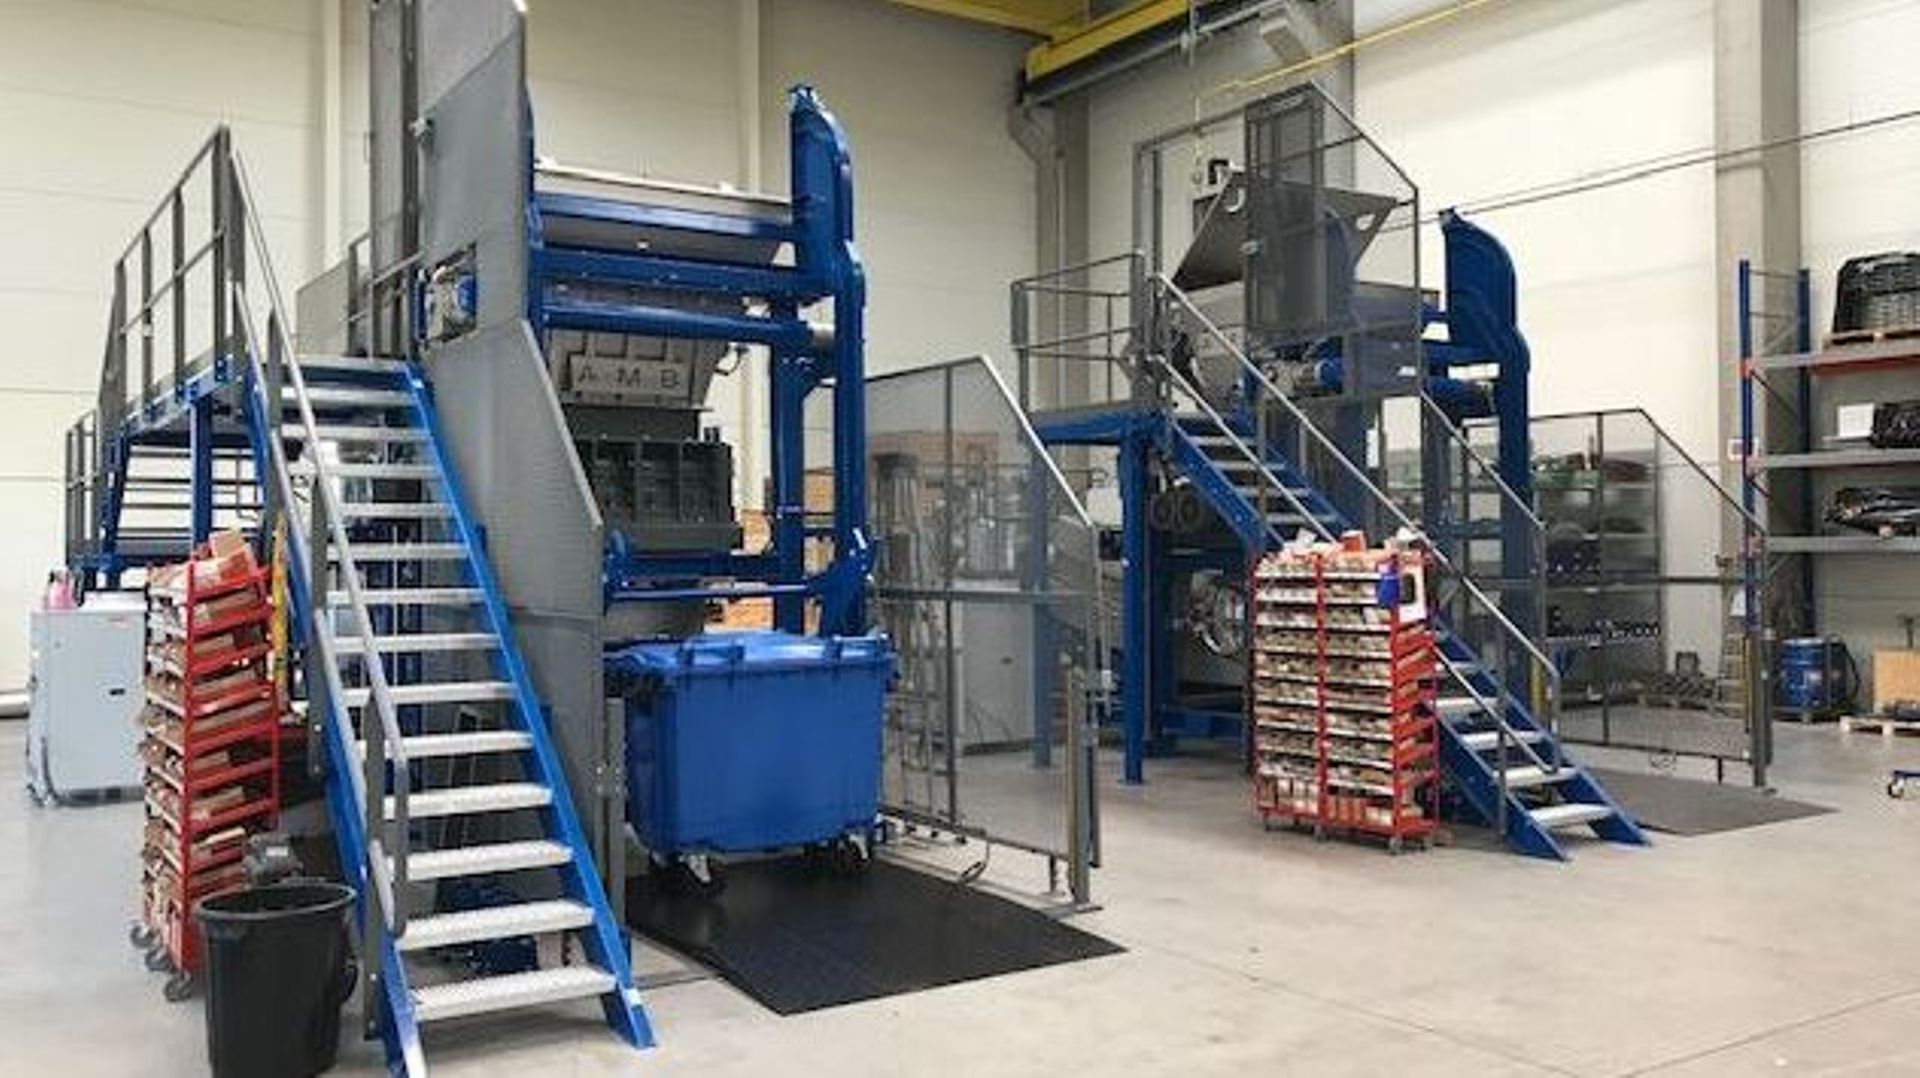 Les machines d’ABM-Ecosteryl permettent de traiter de 100 à 600 kg de déchets médicaux en fonction de leur taille

